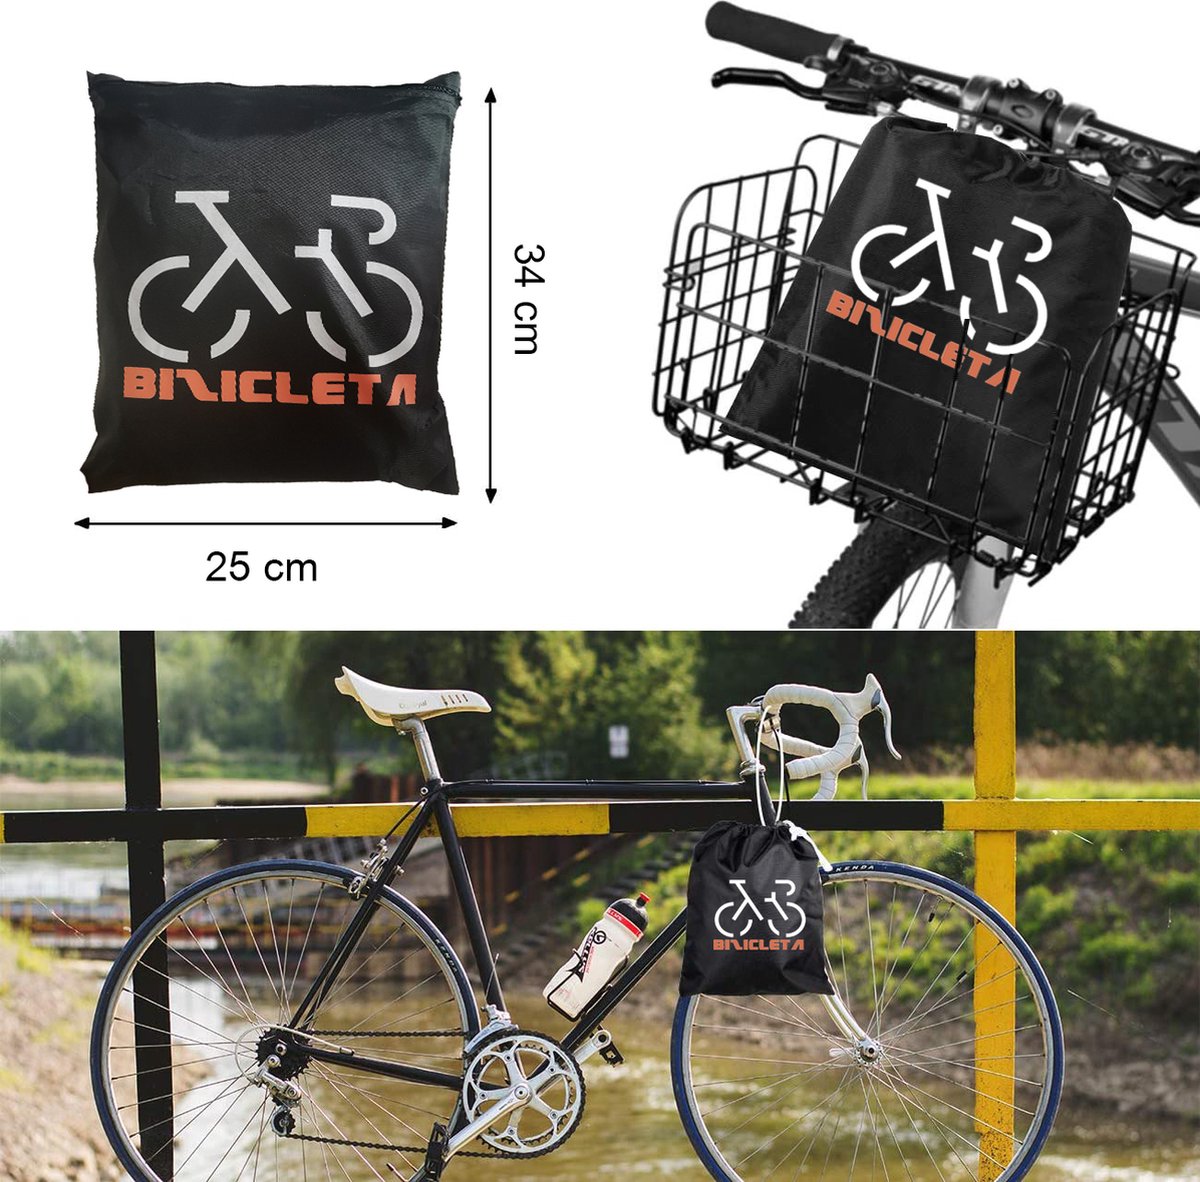 Eljardin - Housse de vélo pour 3 vélos, Toutes les influences  météorologiques, 200 x